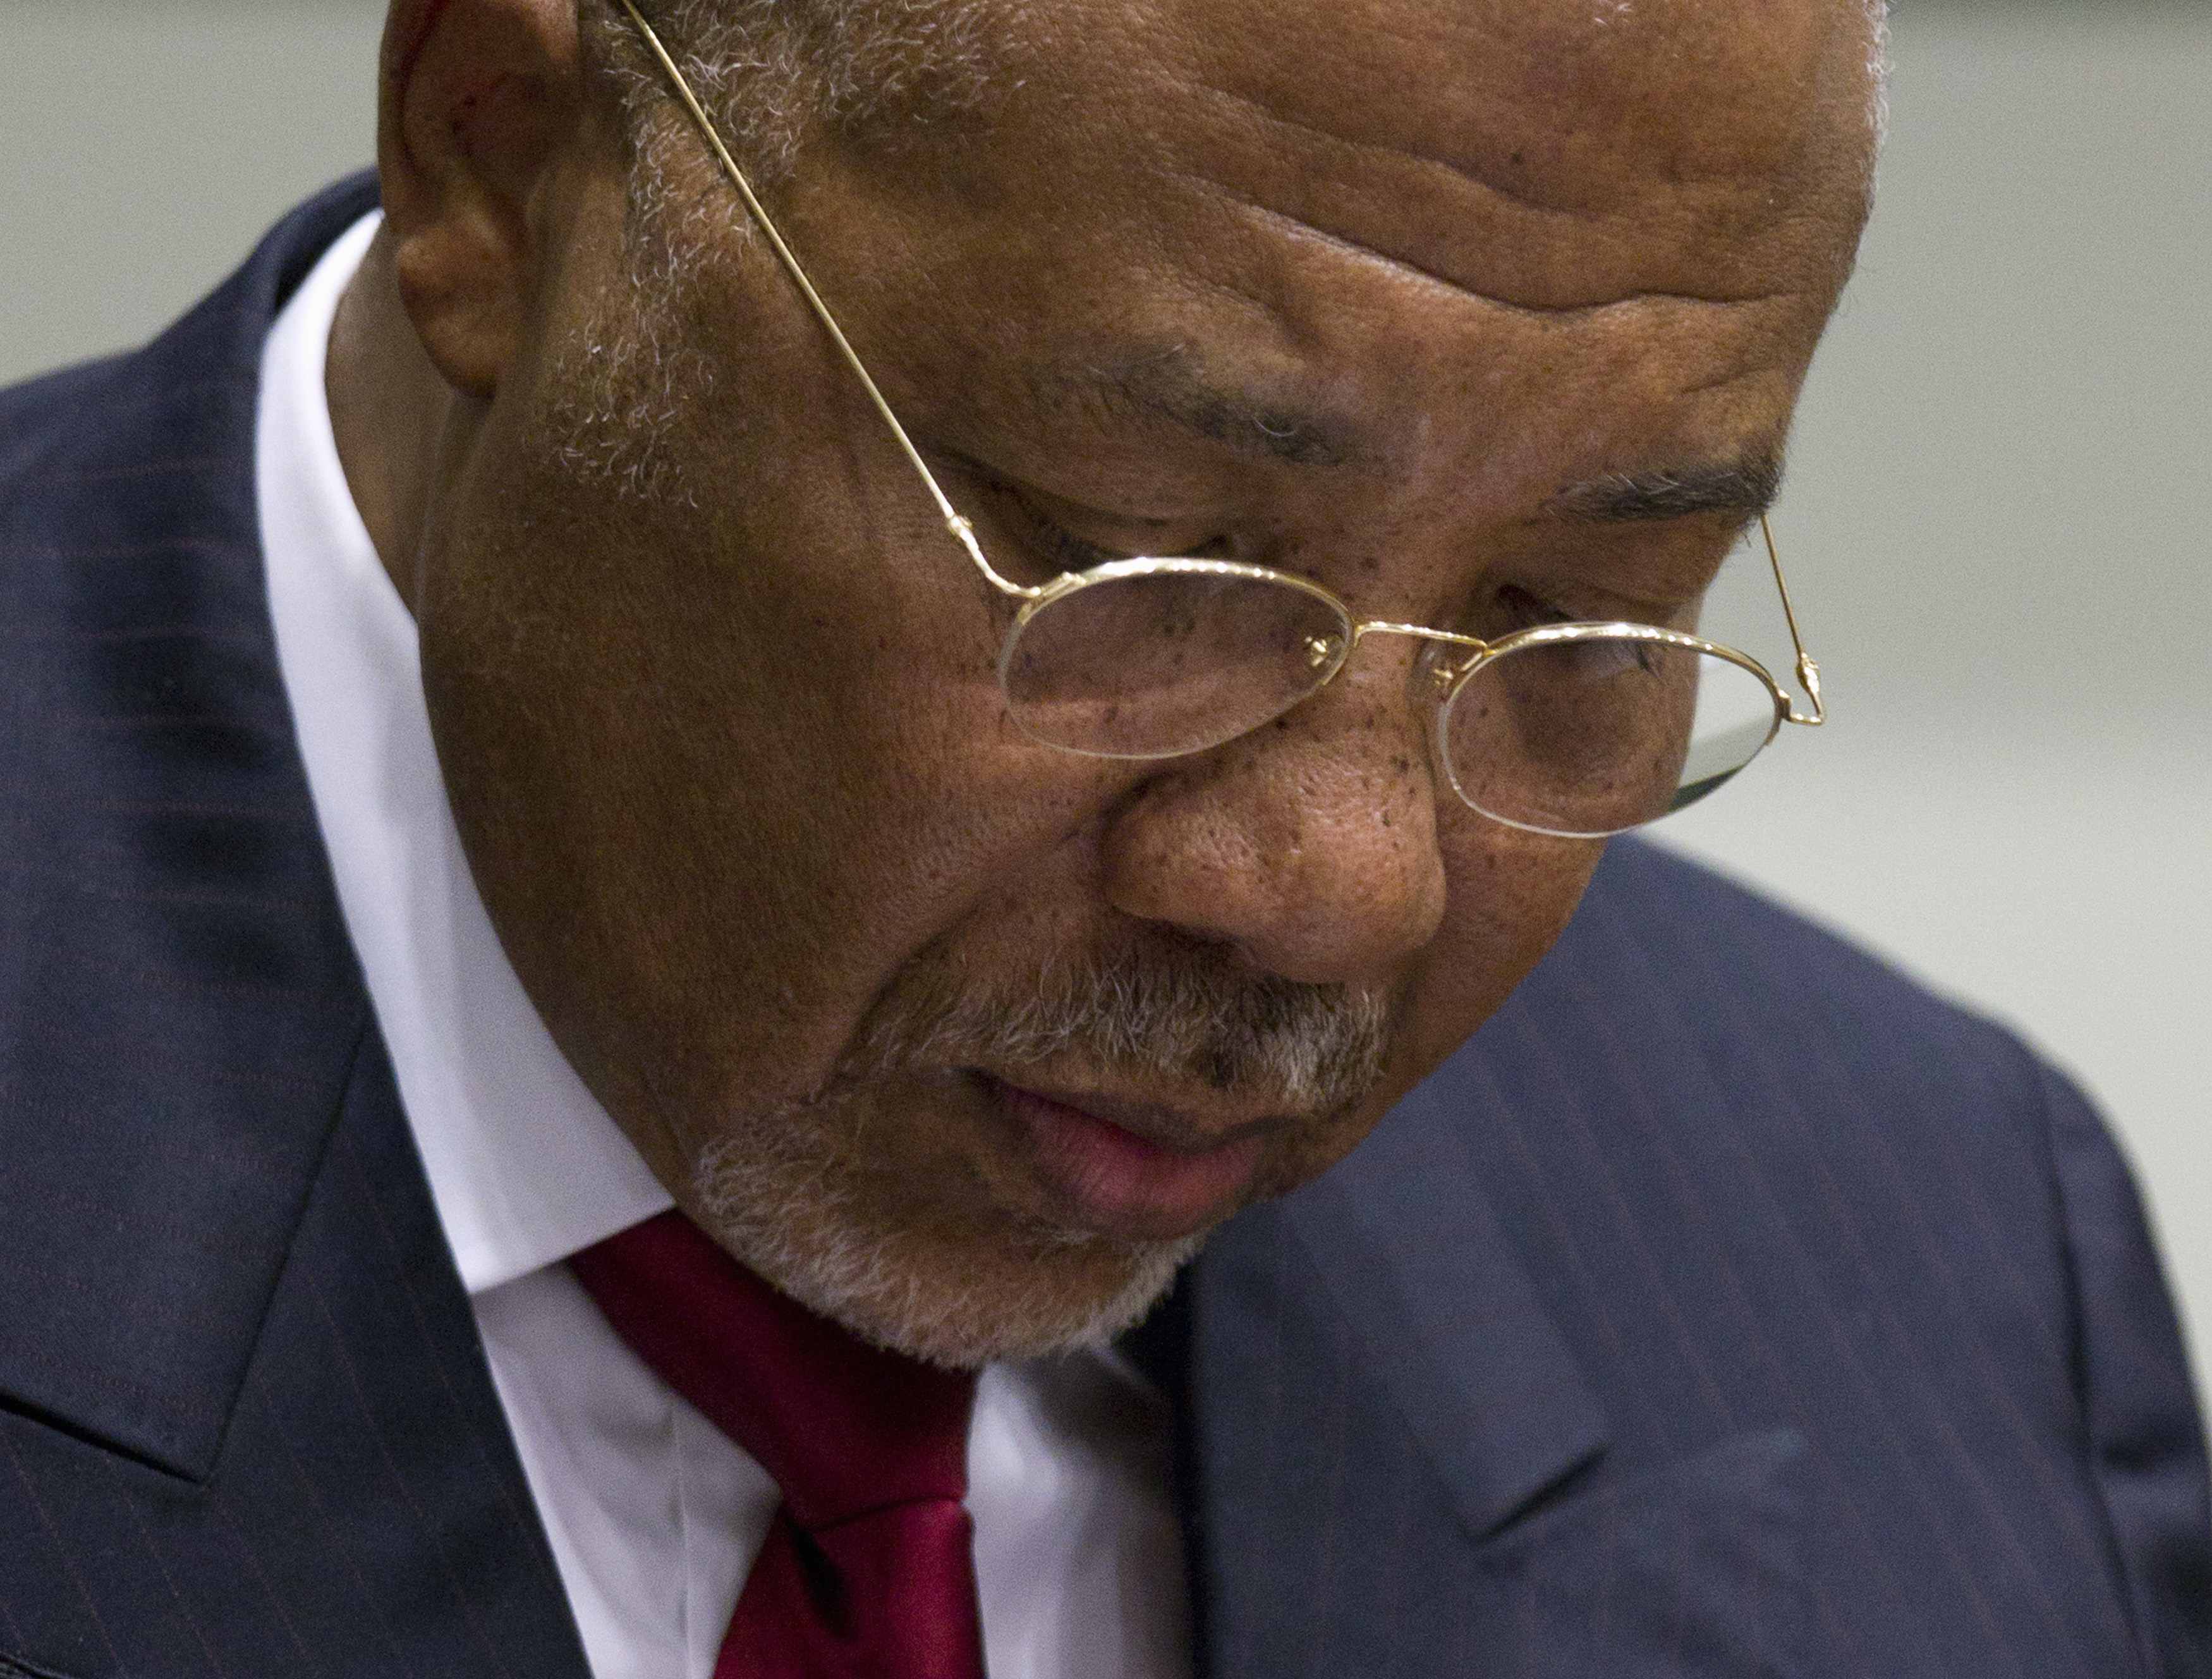 Ενοχος ο πρώην πρόεδρος της Λιβερίας για εγκλήματα κατά της ανθρωπότητας